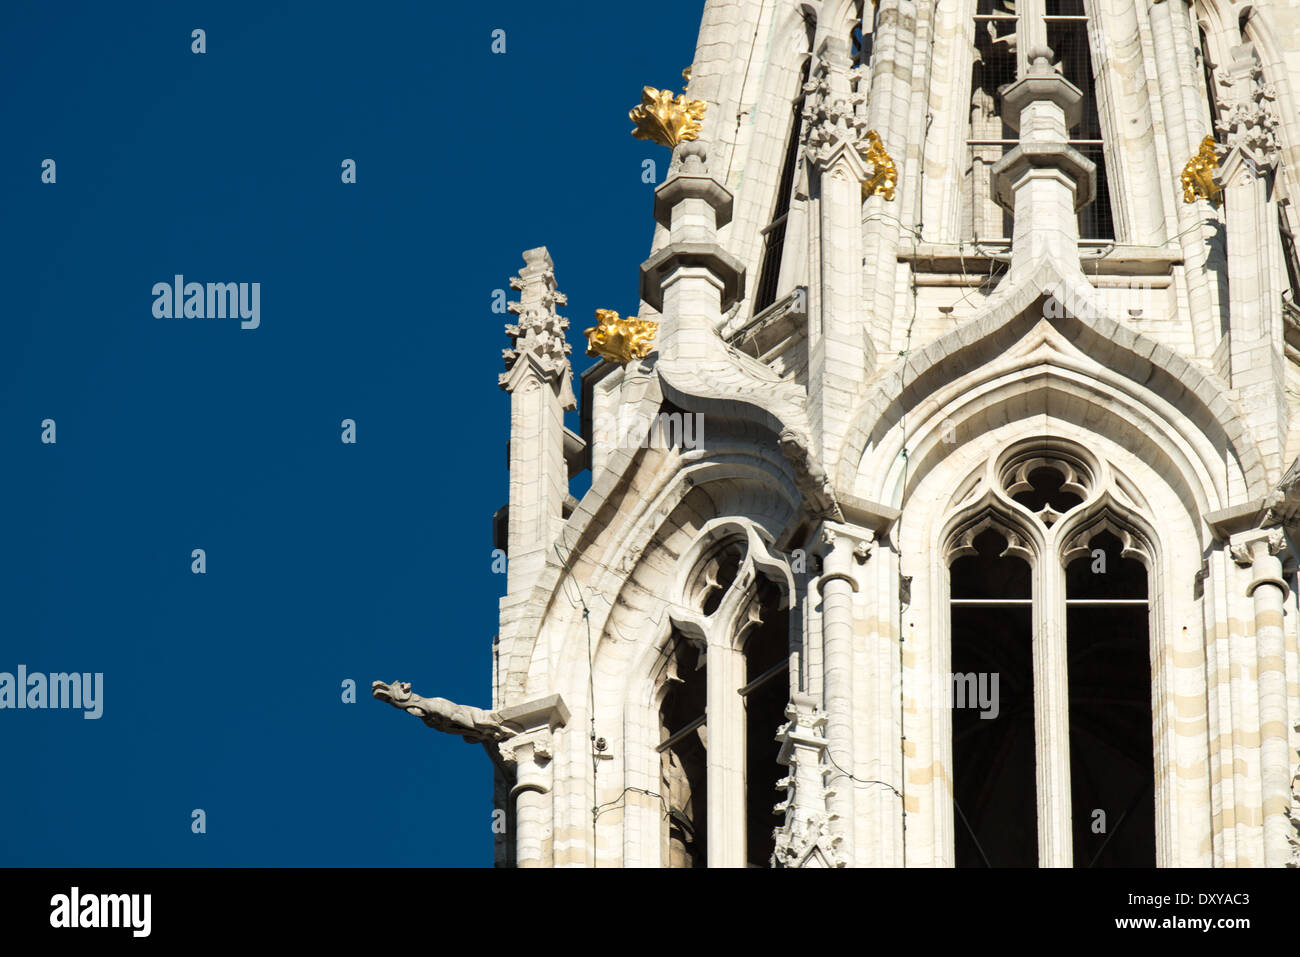 BRUXELLES, Belgio — torreggiante a 96 metri (315 piedi) sopra le ciottolate sulla Grand Place, la guglia del municipio di Bruxelles (Hotel de Ville) è ricoperta da una statua di San Michele che uccide un drago, un simbolo storico per la città. Grand Place (la Grand Place) è un sito patrimonio dell'umanità dell'UNESCO nel centro di Bruxelles, in Belgio. Fiancheggiata da edifici storici ornati, la piazza acciottolata è la principale attrazione turistica di Bruxelles. Foto Stock